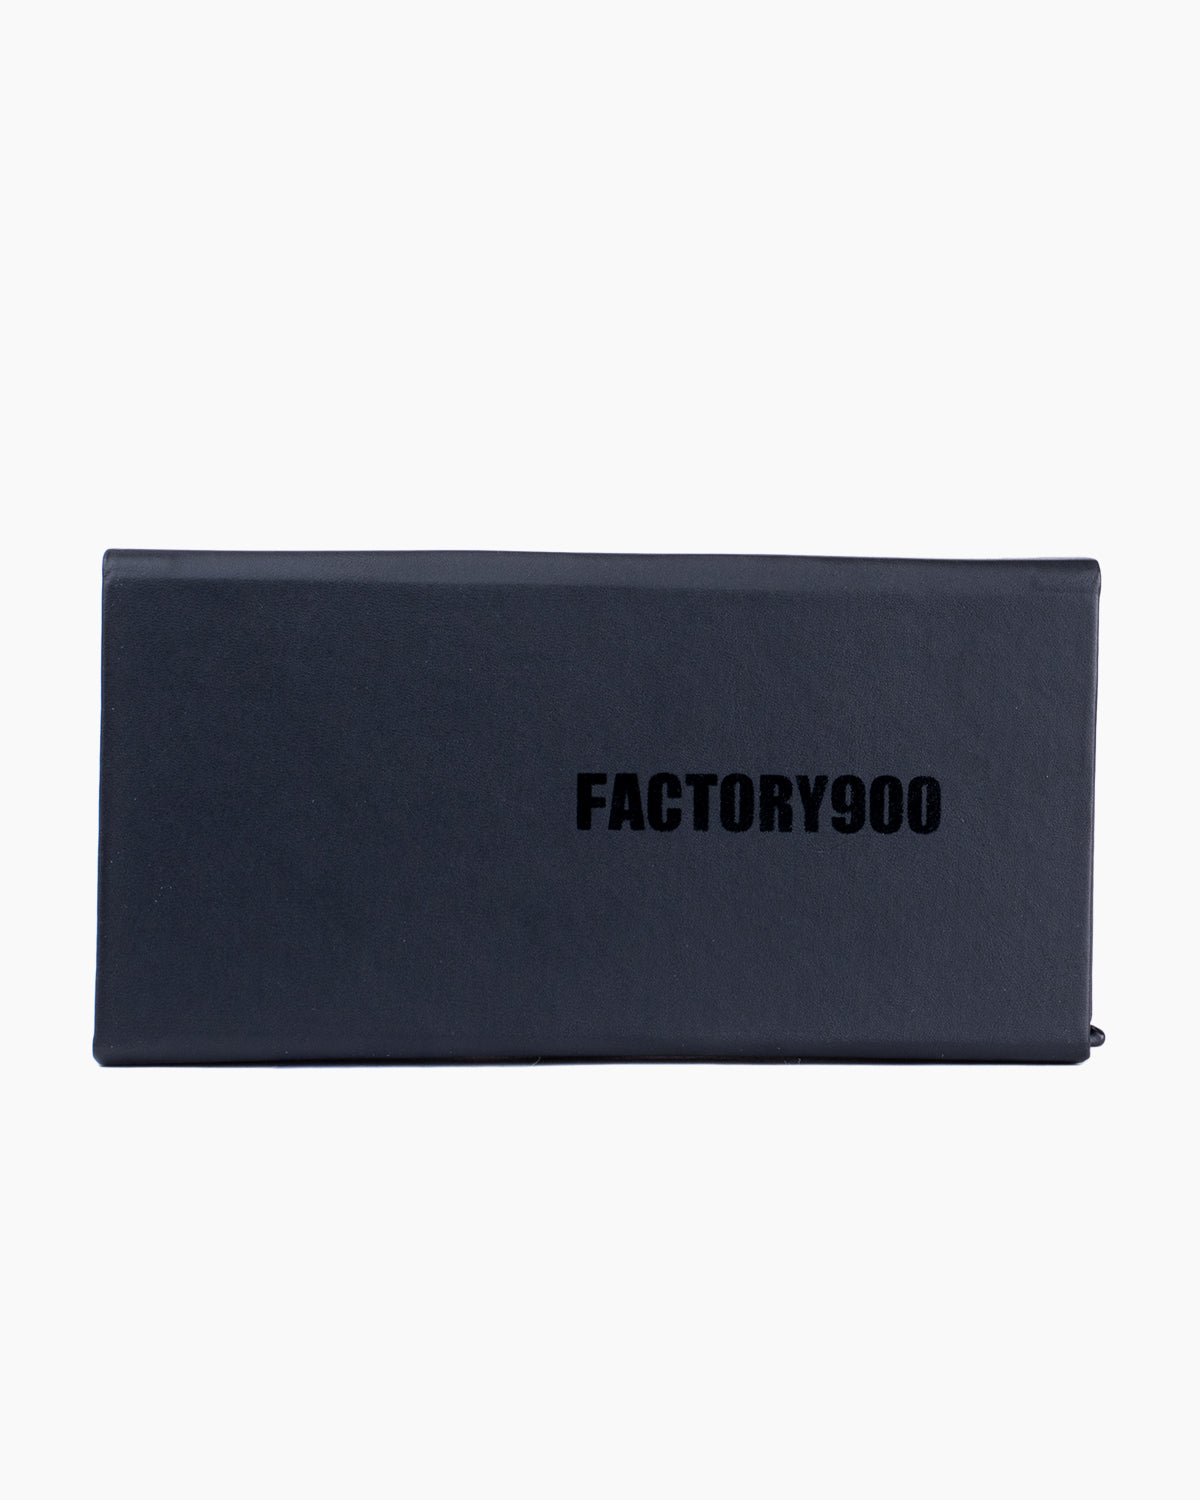 Factory 900 - Maru - 731 | Bar à lunettes